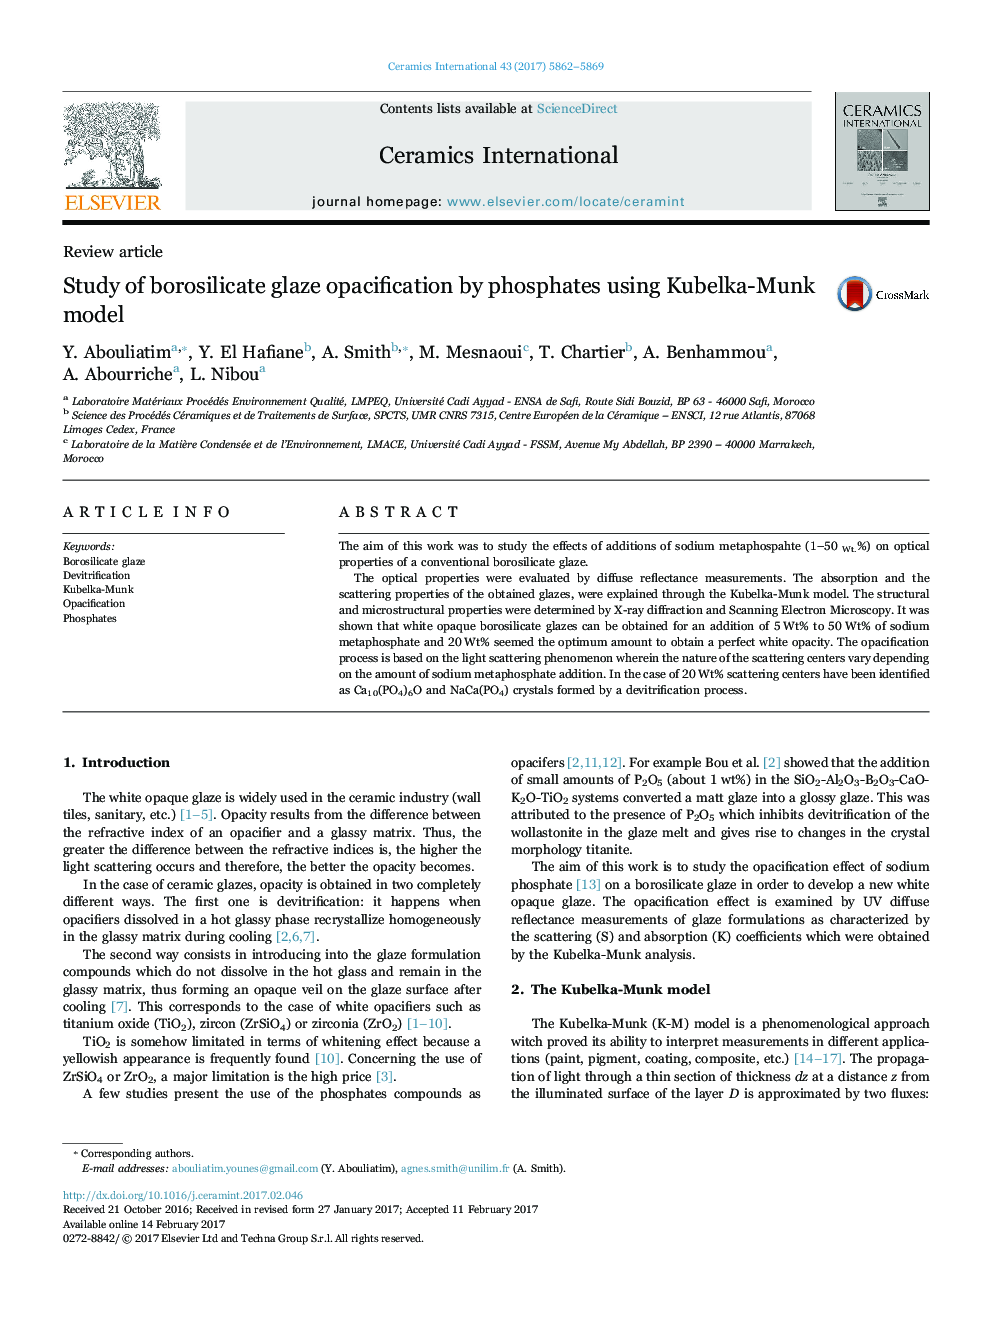 Study of borosilicate glaze opacification by phosphates using Kubelka-Munk model